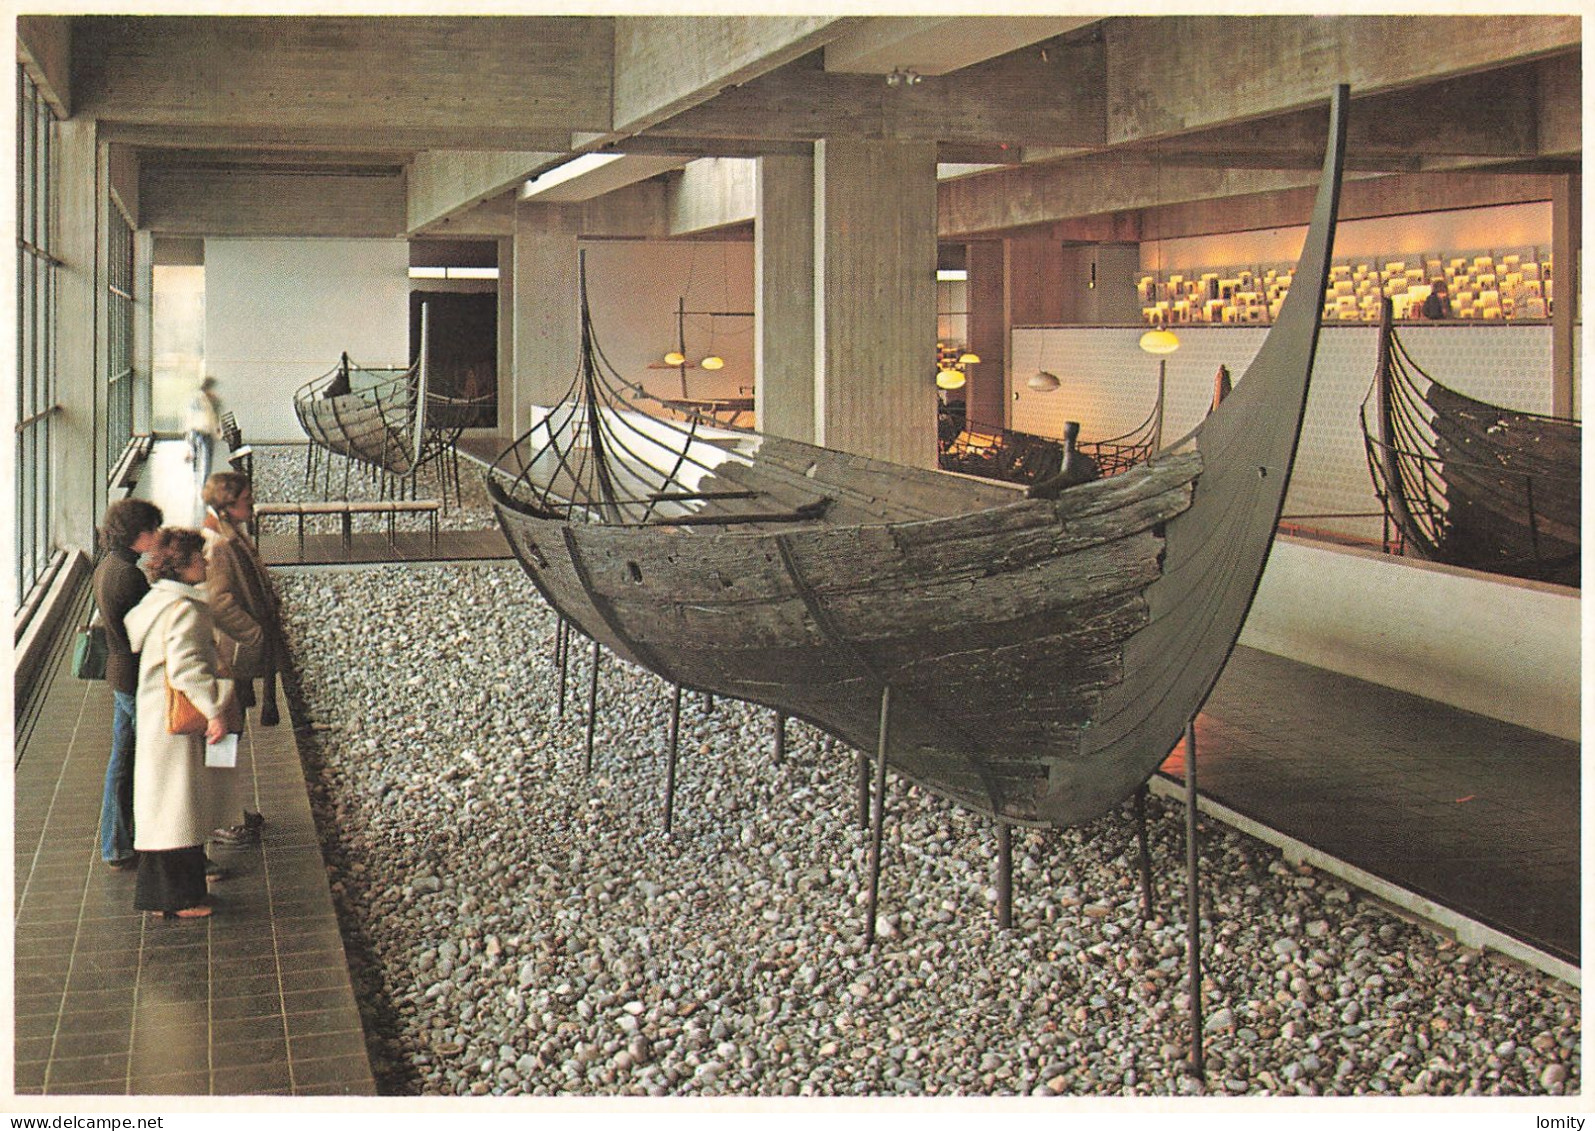 déstockage thème bateau bateaux lot de 9 cartes postales Chebec la Bretonne galère romaine , drakkar viking